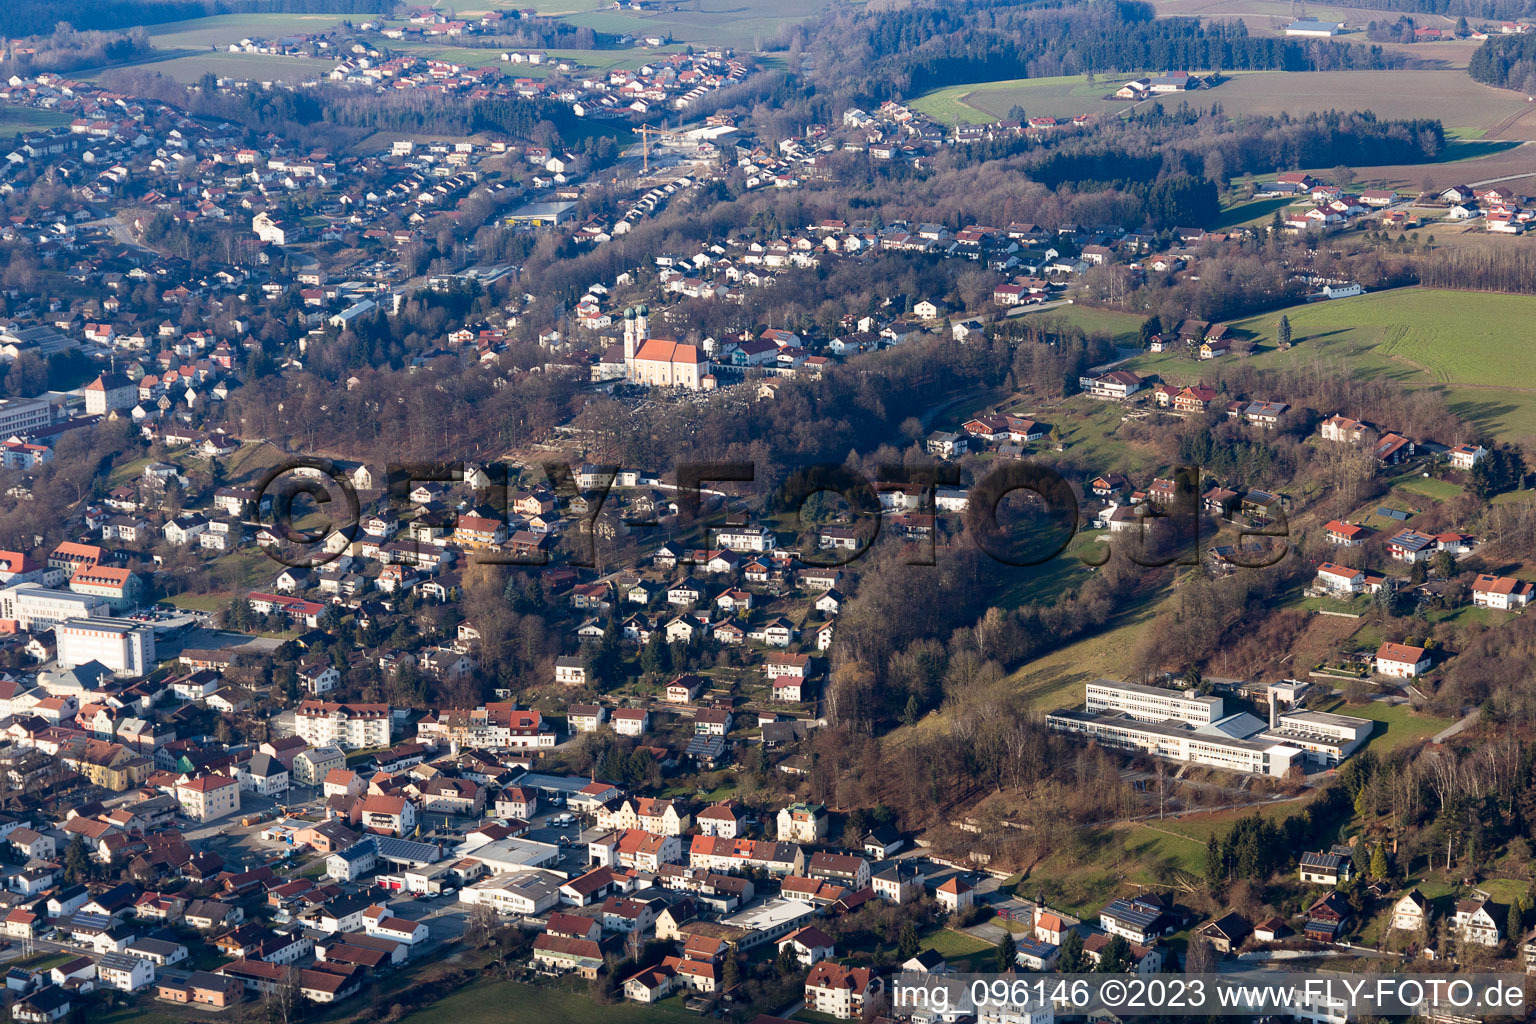 Pfarrkirchen im Bundesland Bayern, Deutschland aus der Luft betrachtet